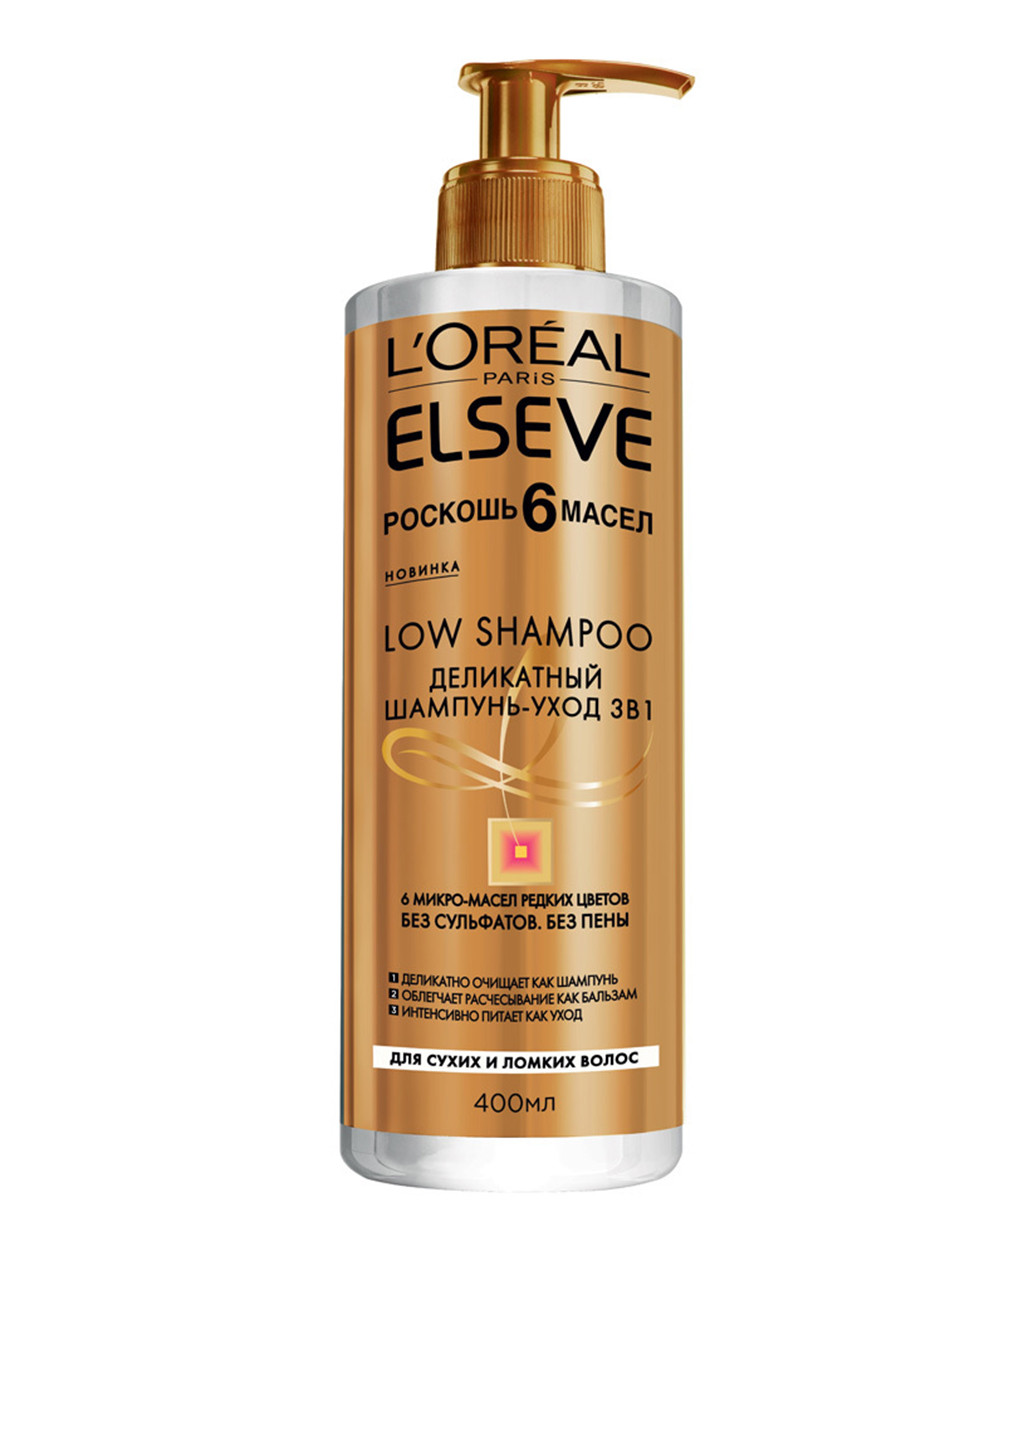 Делікатний шампунь-догляд для сухих і ламких волосся 3в1 "Розкіш 6 масел" Elseve Low Shampoo 400 мл L'Oreal Paris (88092343)